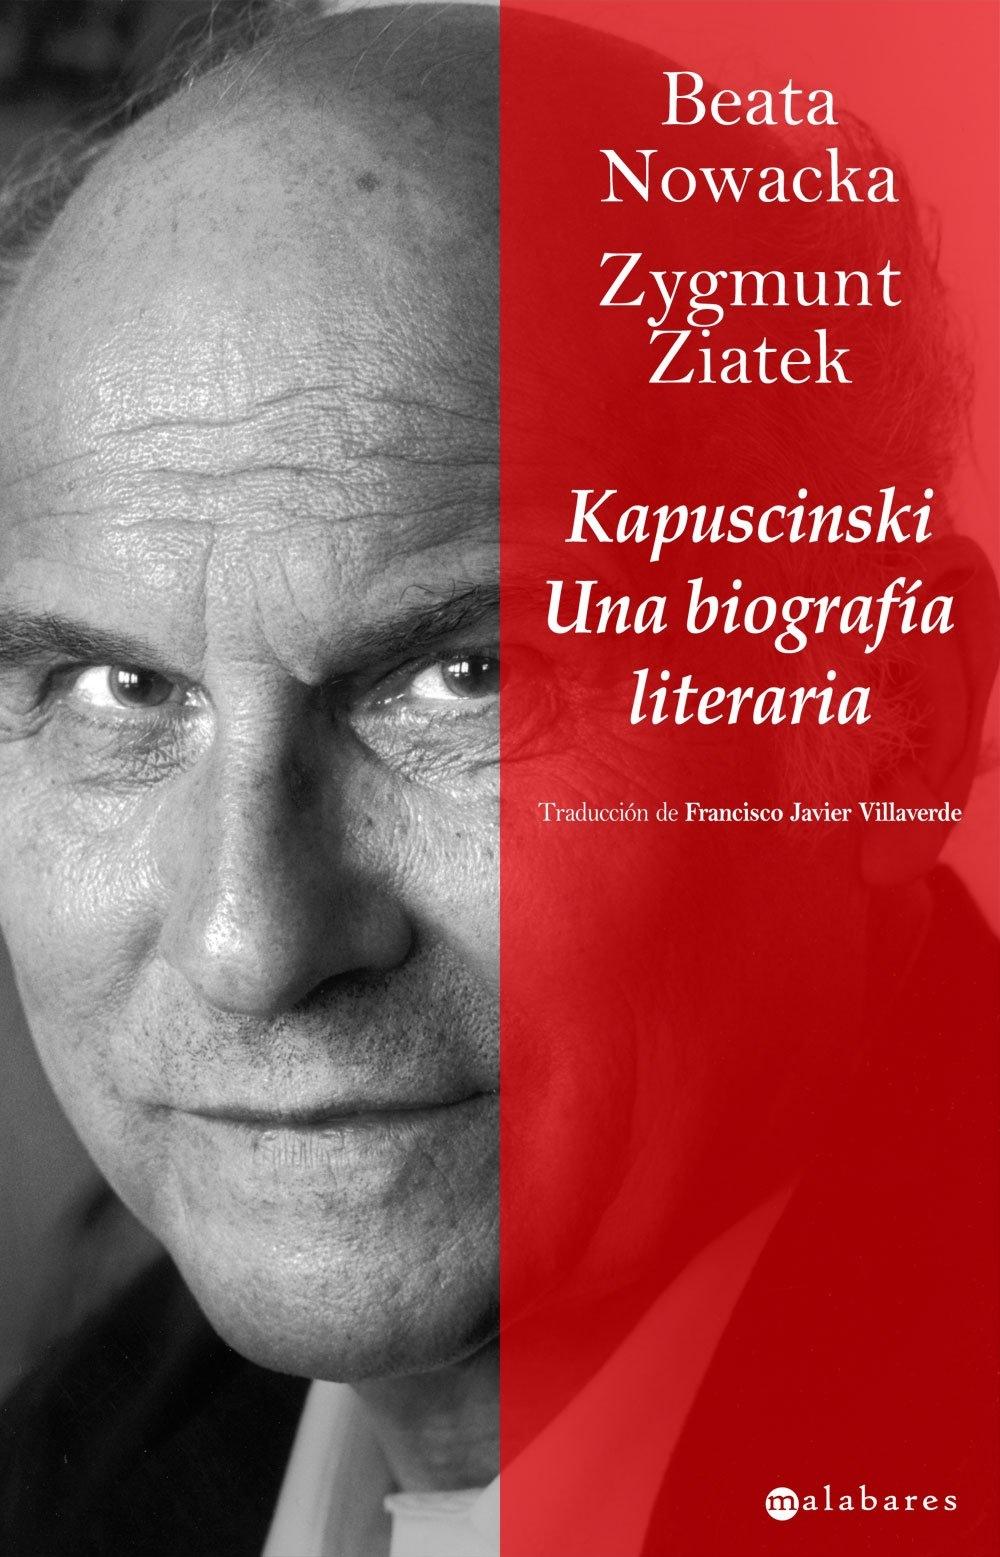 Kapuscinski "Una Biografía Literaria". 